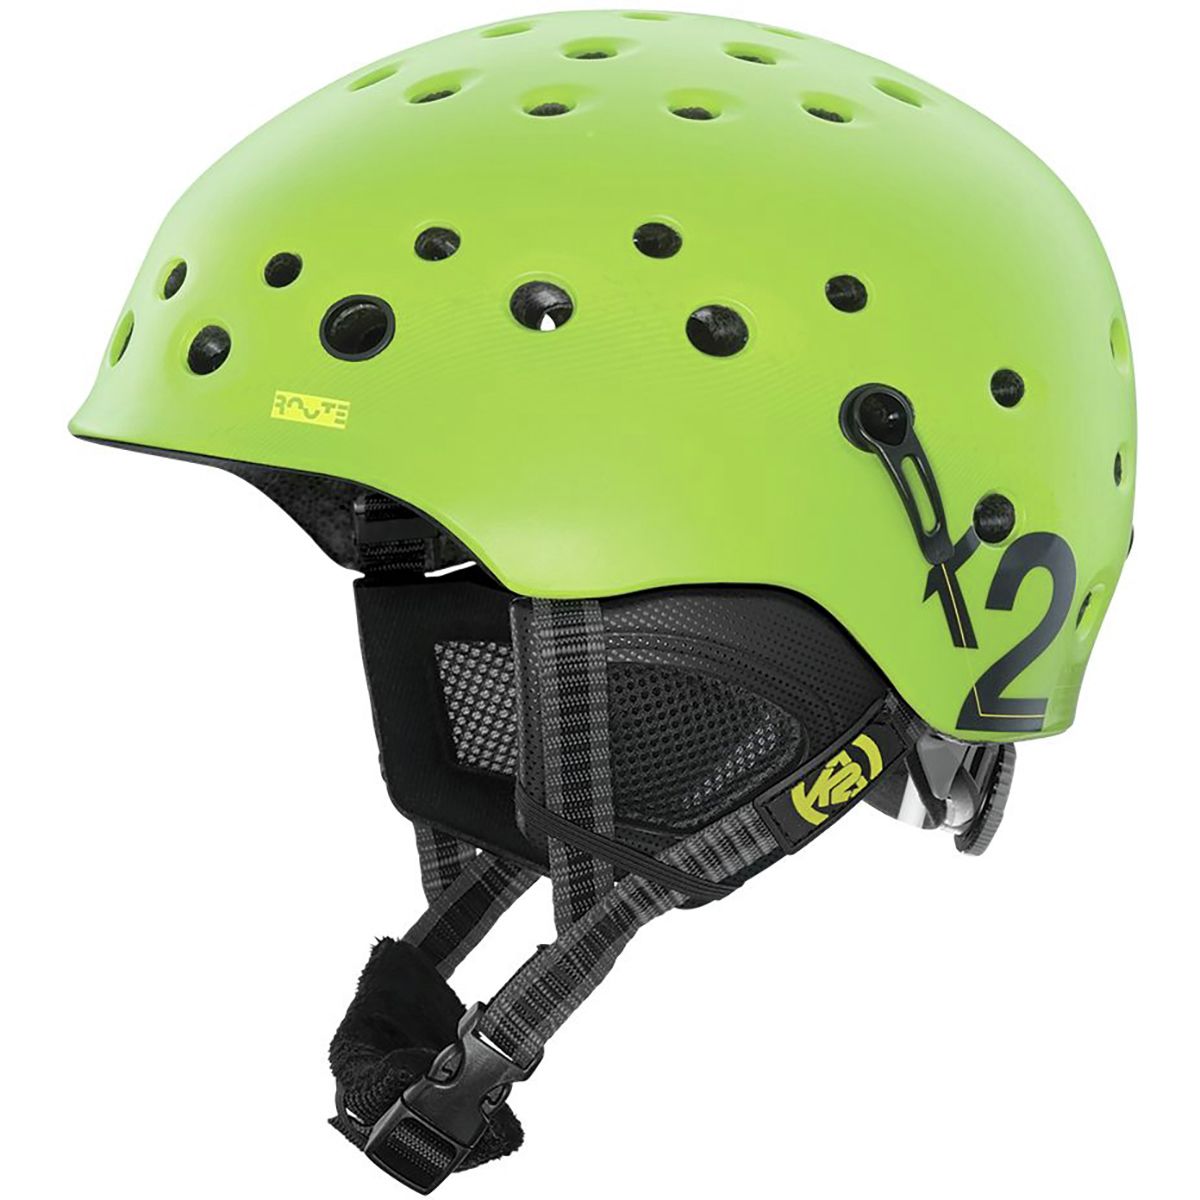 K2 Route Helmet Green